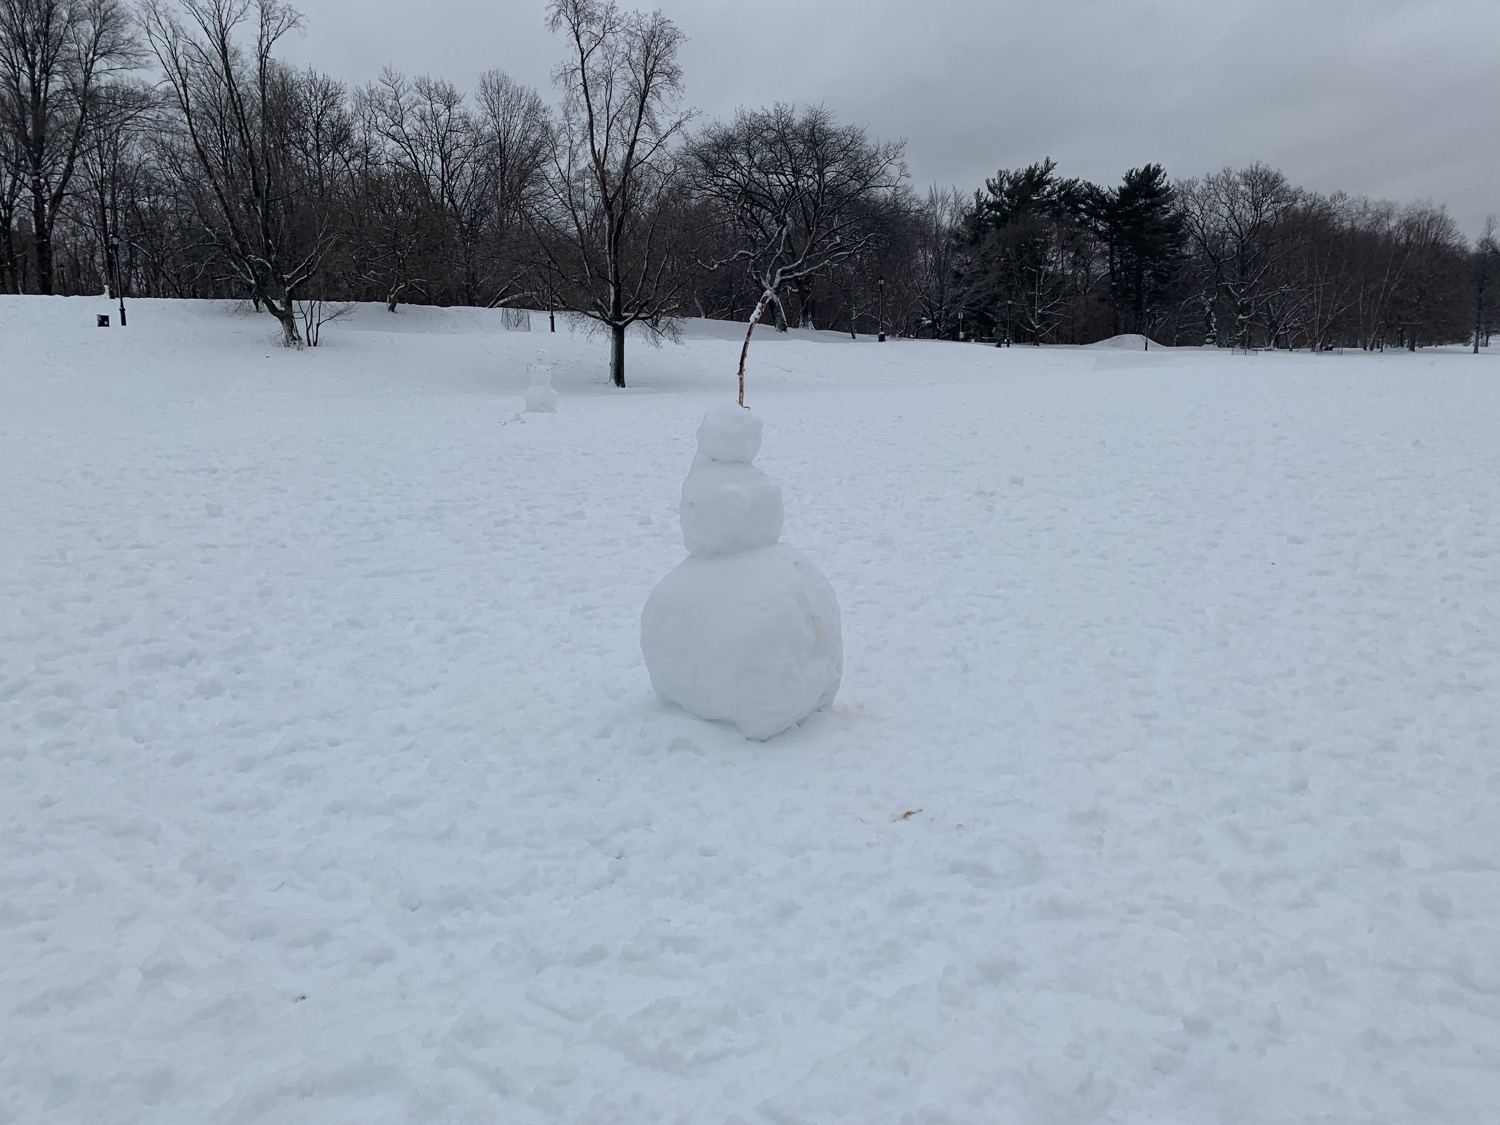 Snow in Prospect Park